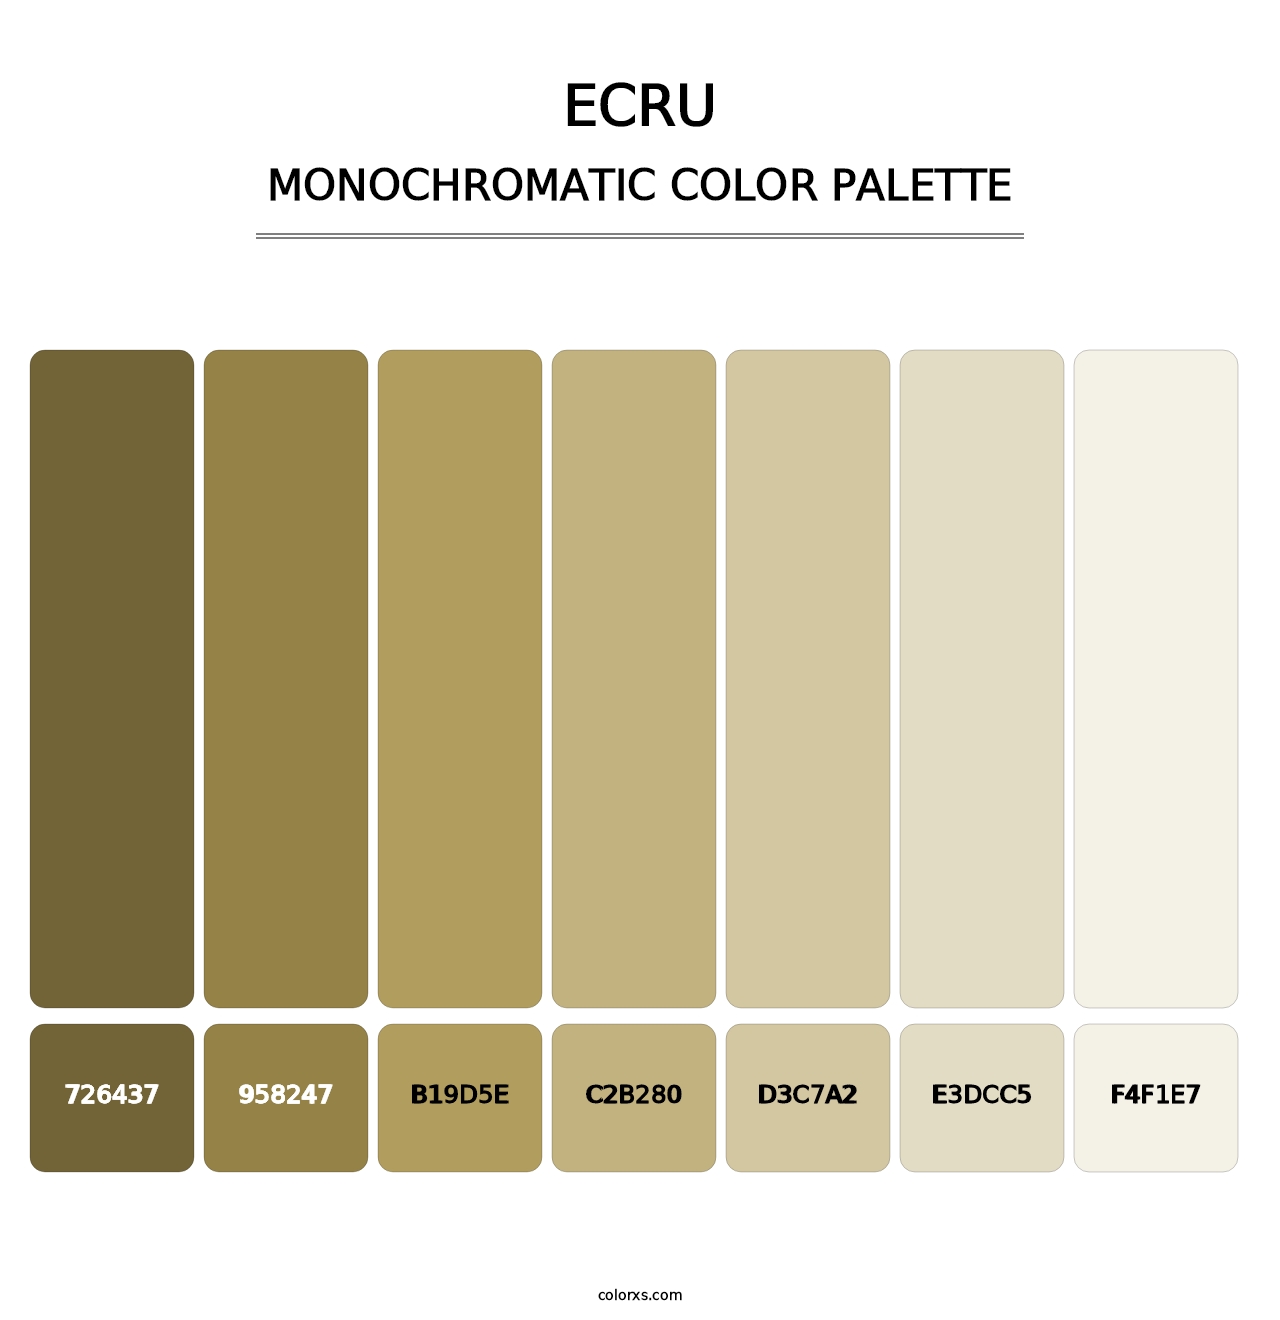 Ecru - Monochromatic Color Palette